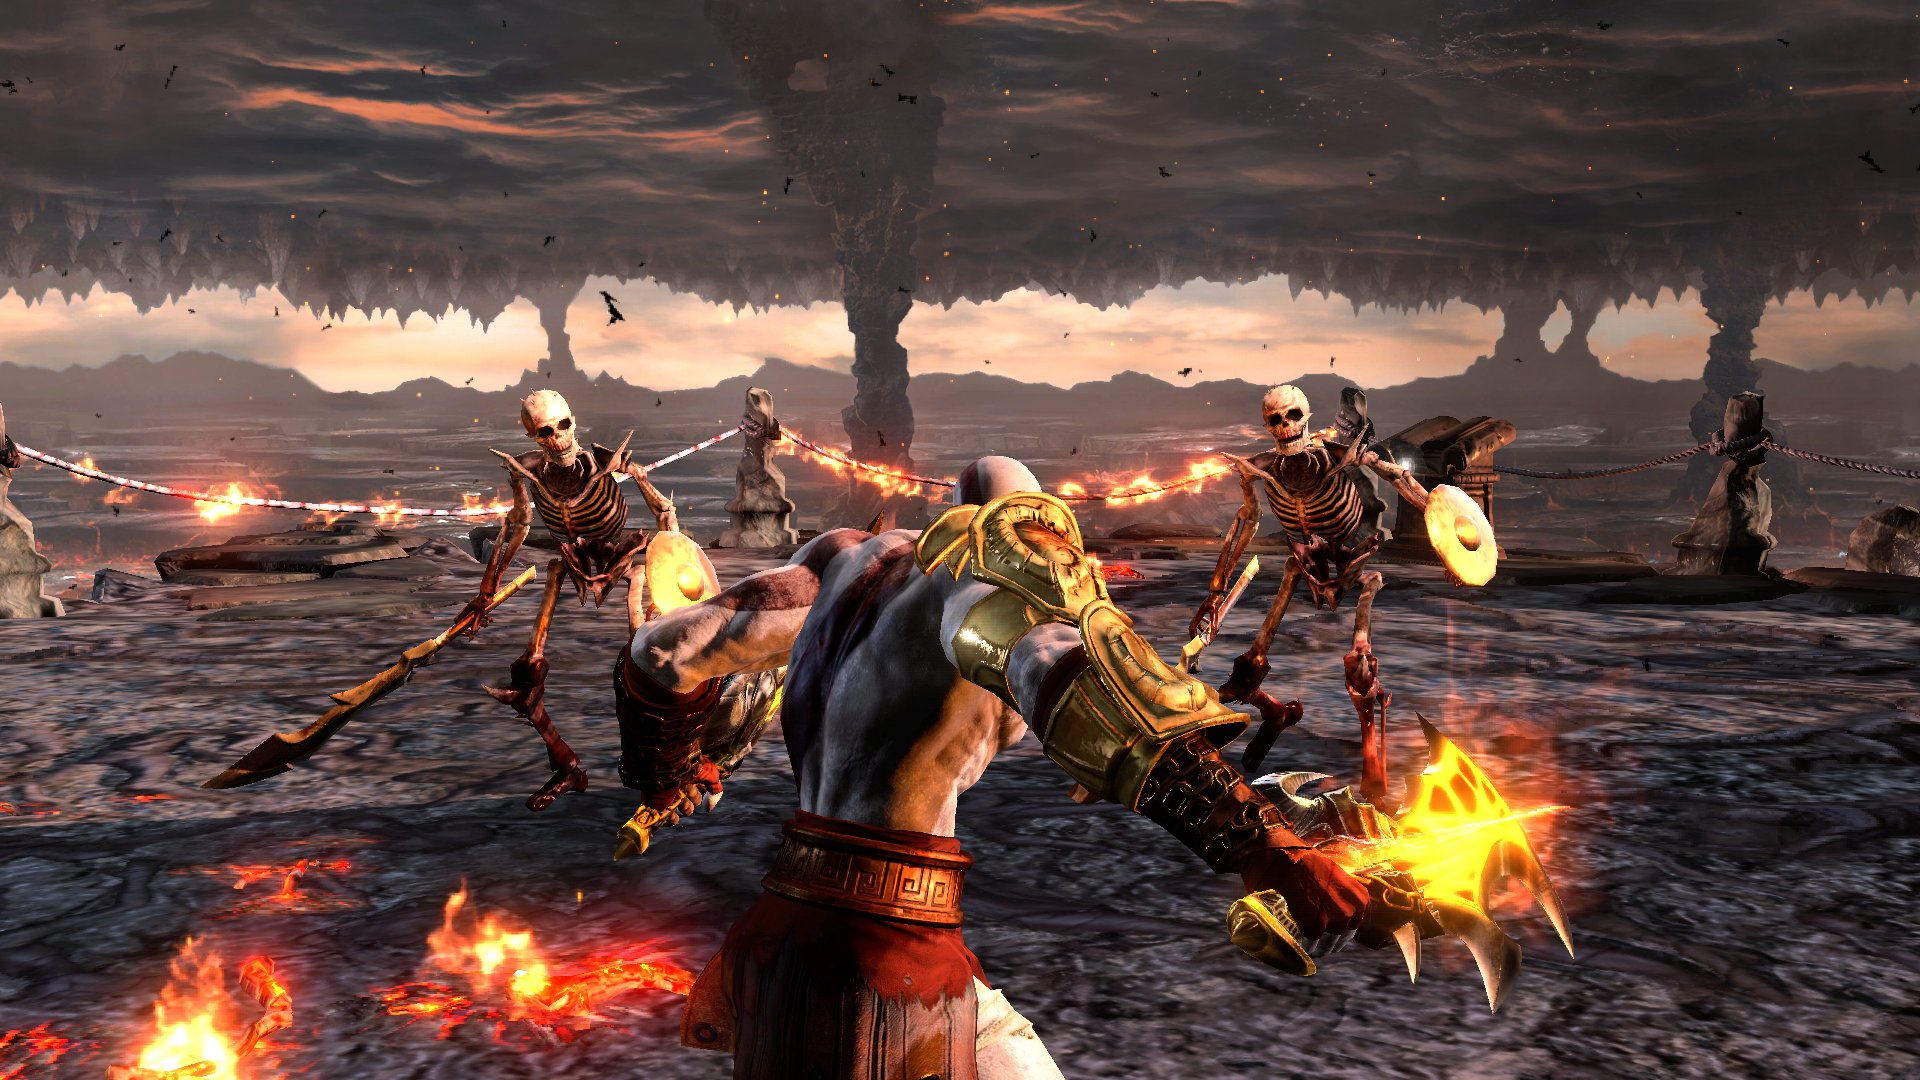 God Of War III HD wallpapers, Desktop wallpaper - most viewed